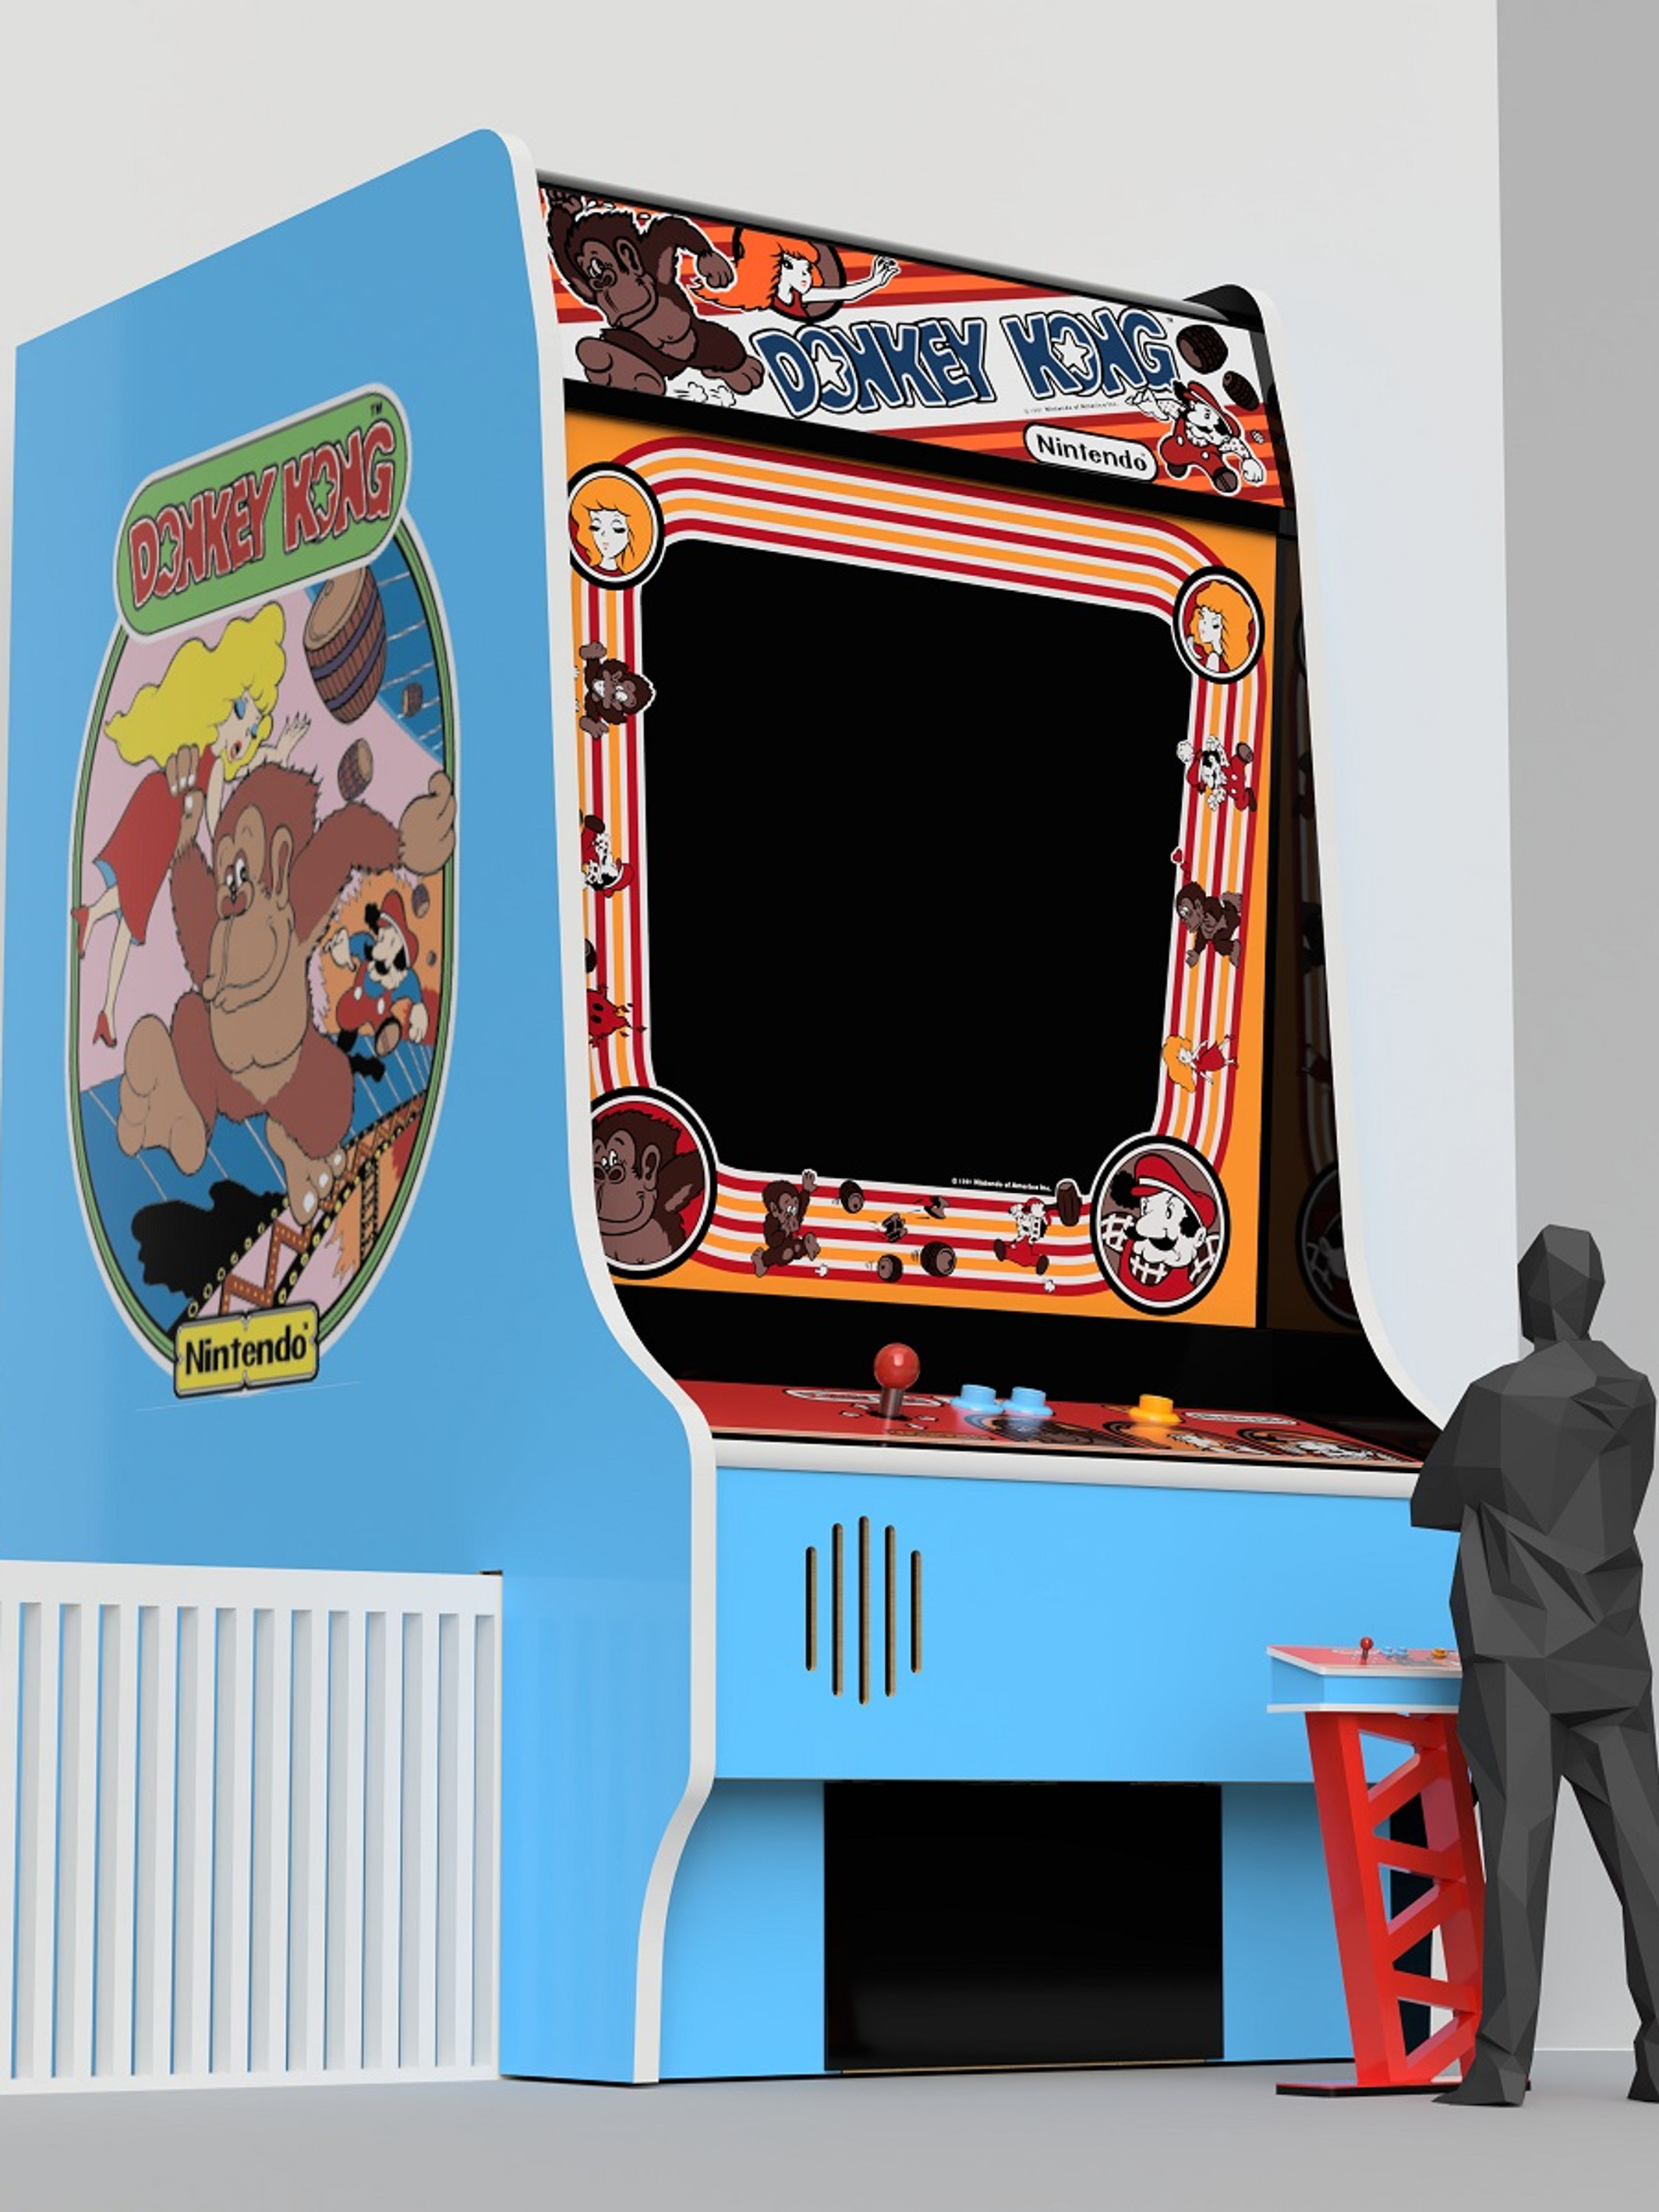 original donkey kong arcade game